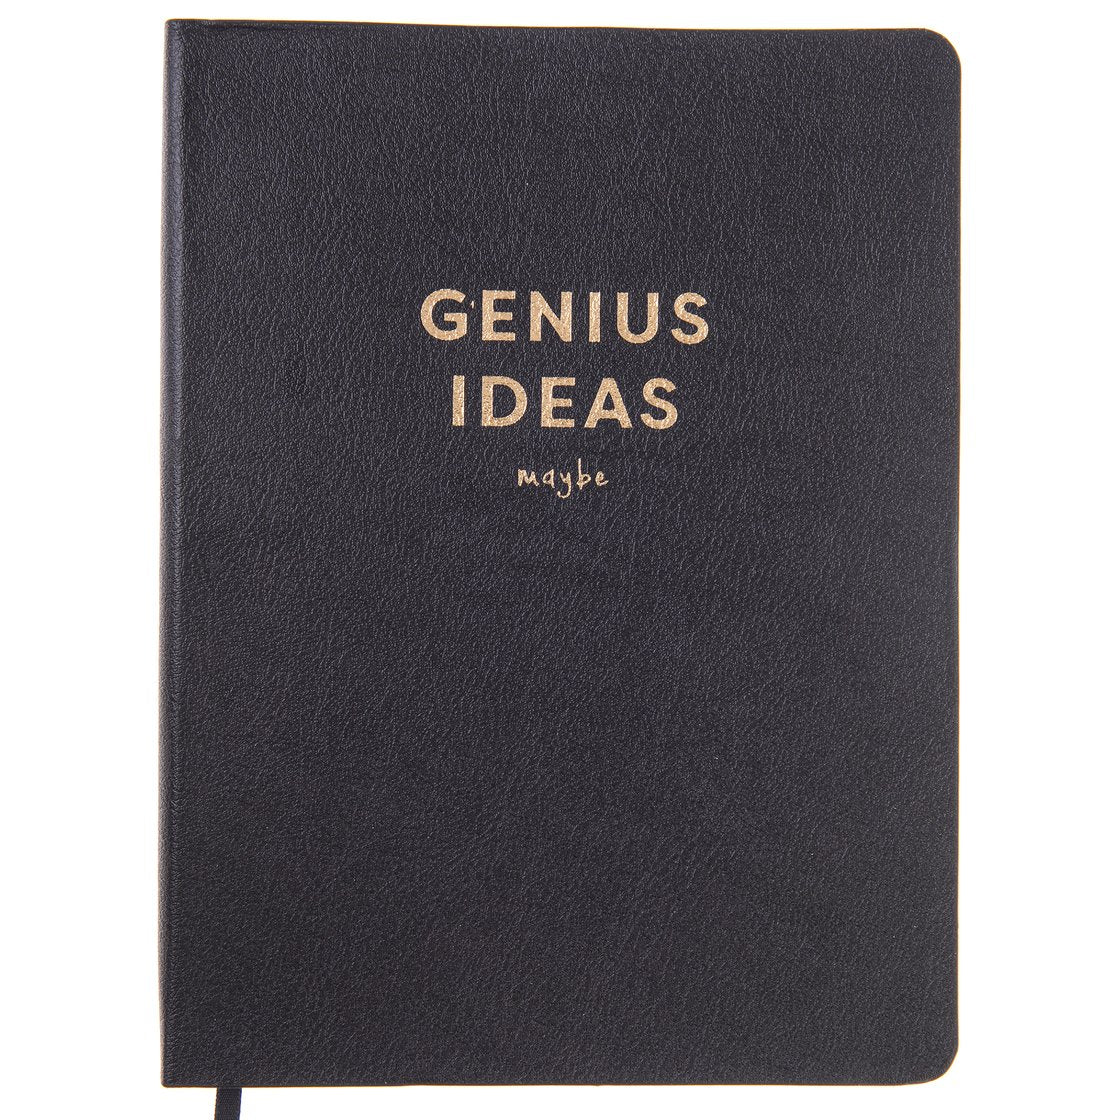 Genius Ideas Vegan Leather Journal